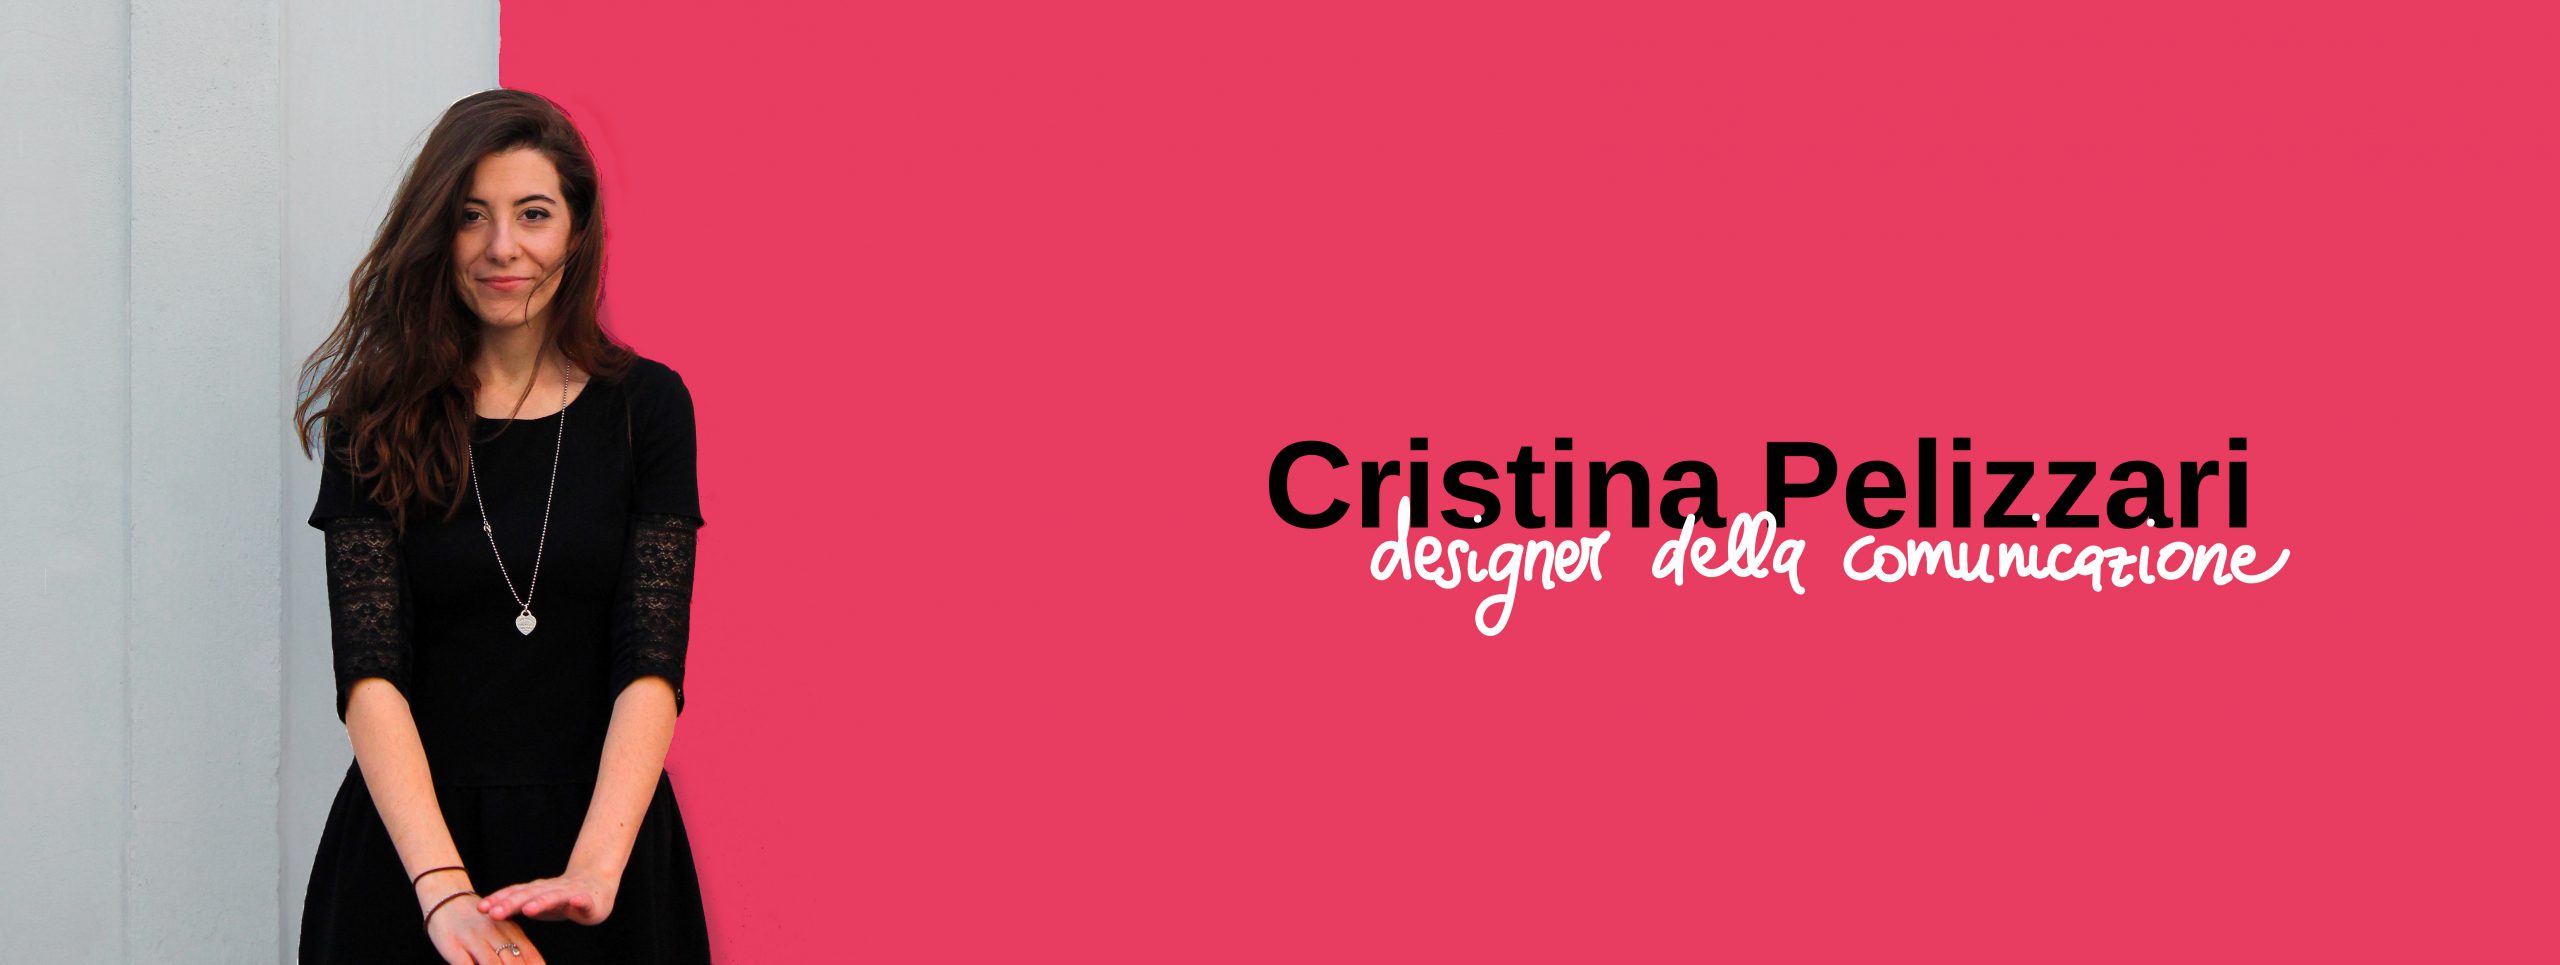 cristina pelizzari designer